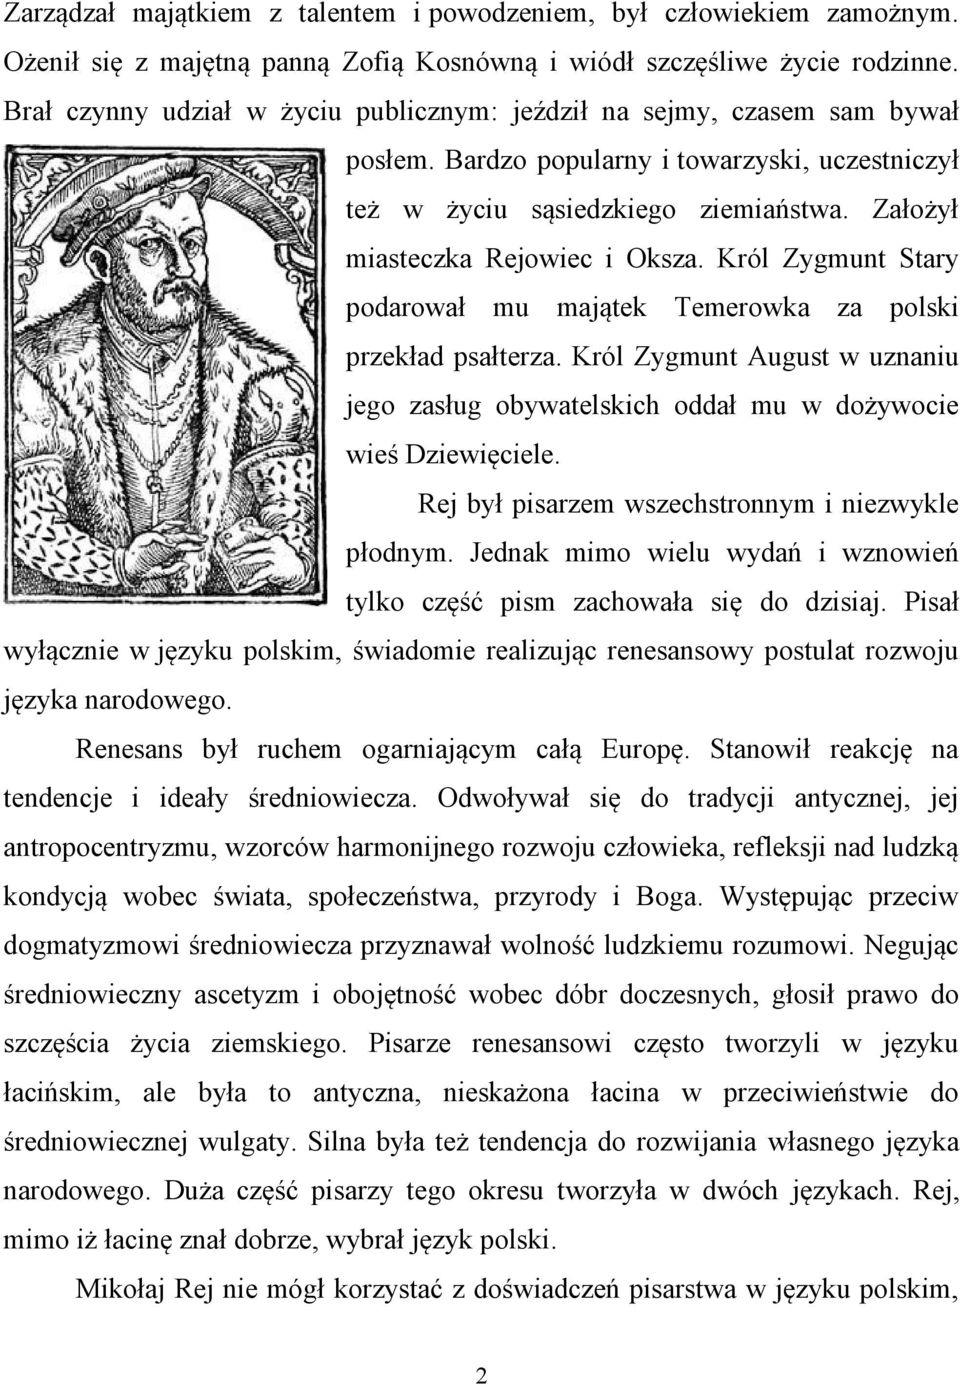 Król Zygmunt Stary podarował mu majątek Temerowka za polski przekład psałterza. Król Zygmunt August w uznaniu jego zasług obywatelskich oddał mu w dożywocie wieś Dziewięciele.